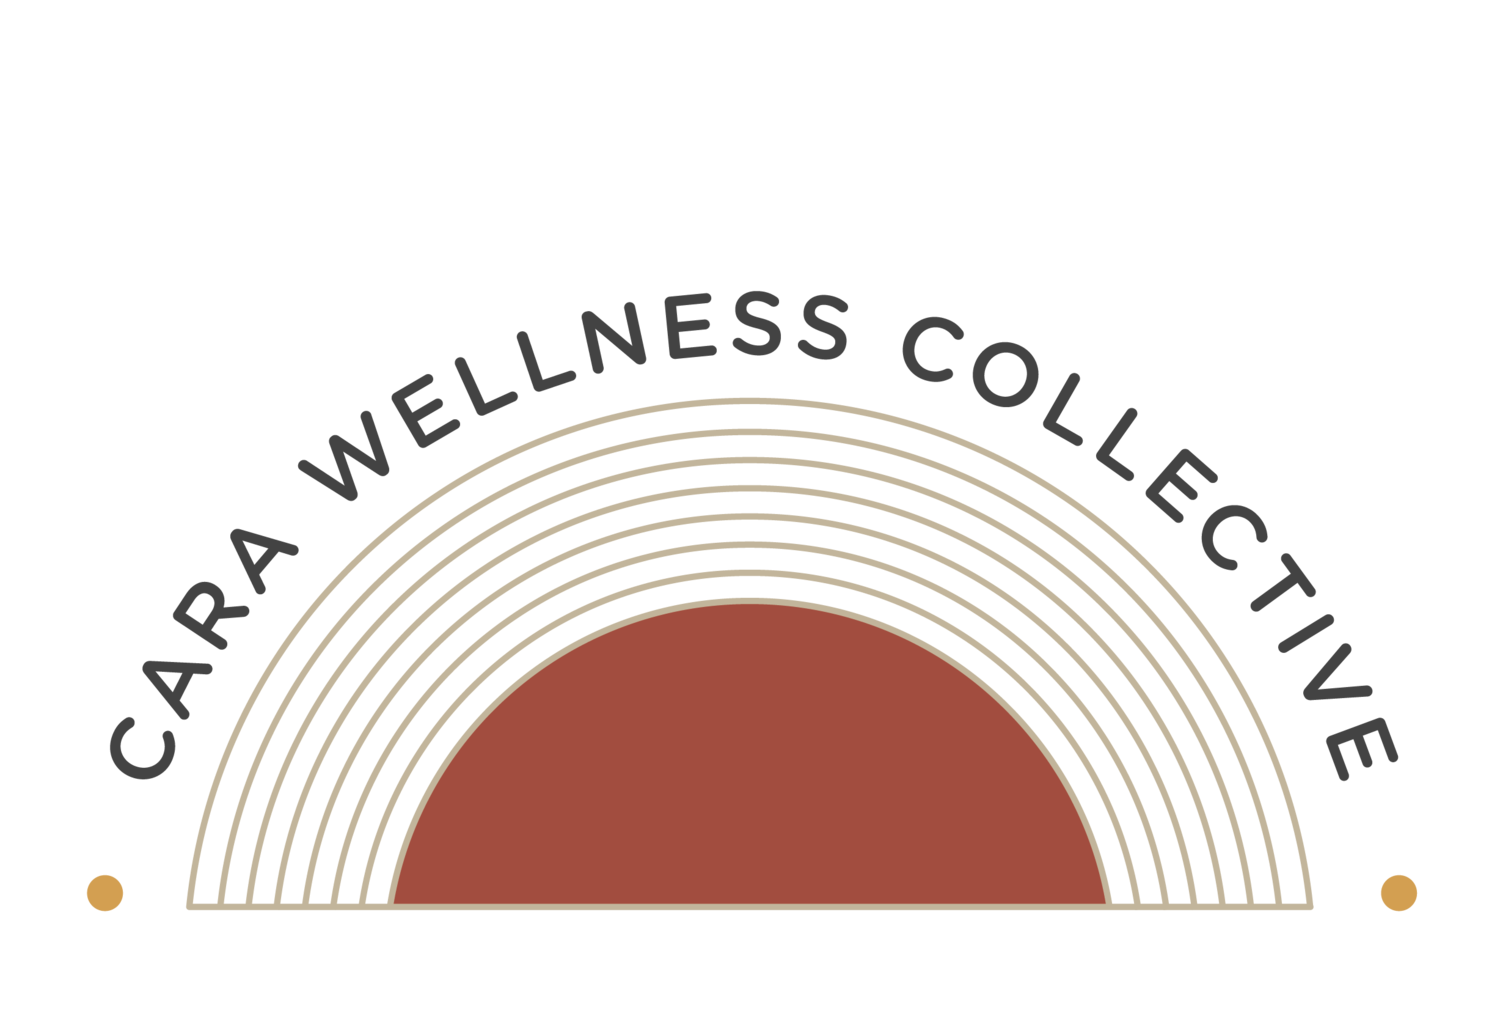 Cara Wellness Collective